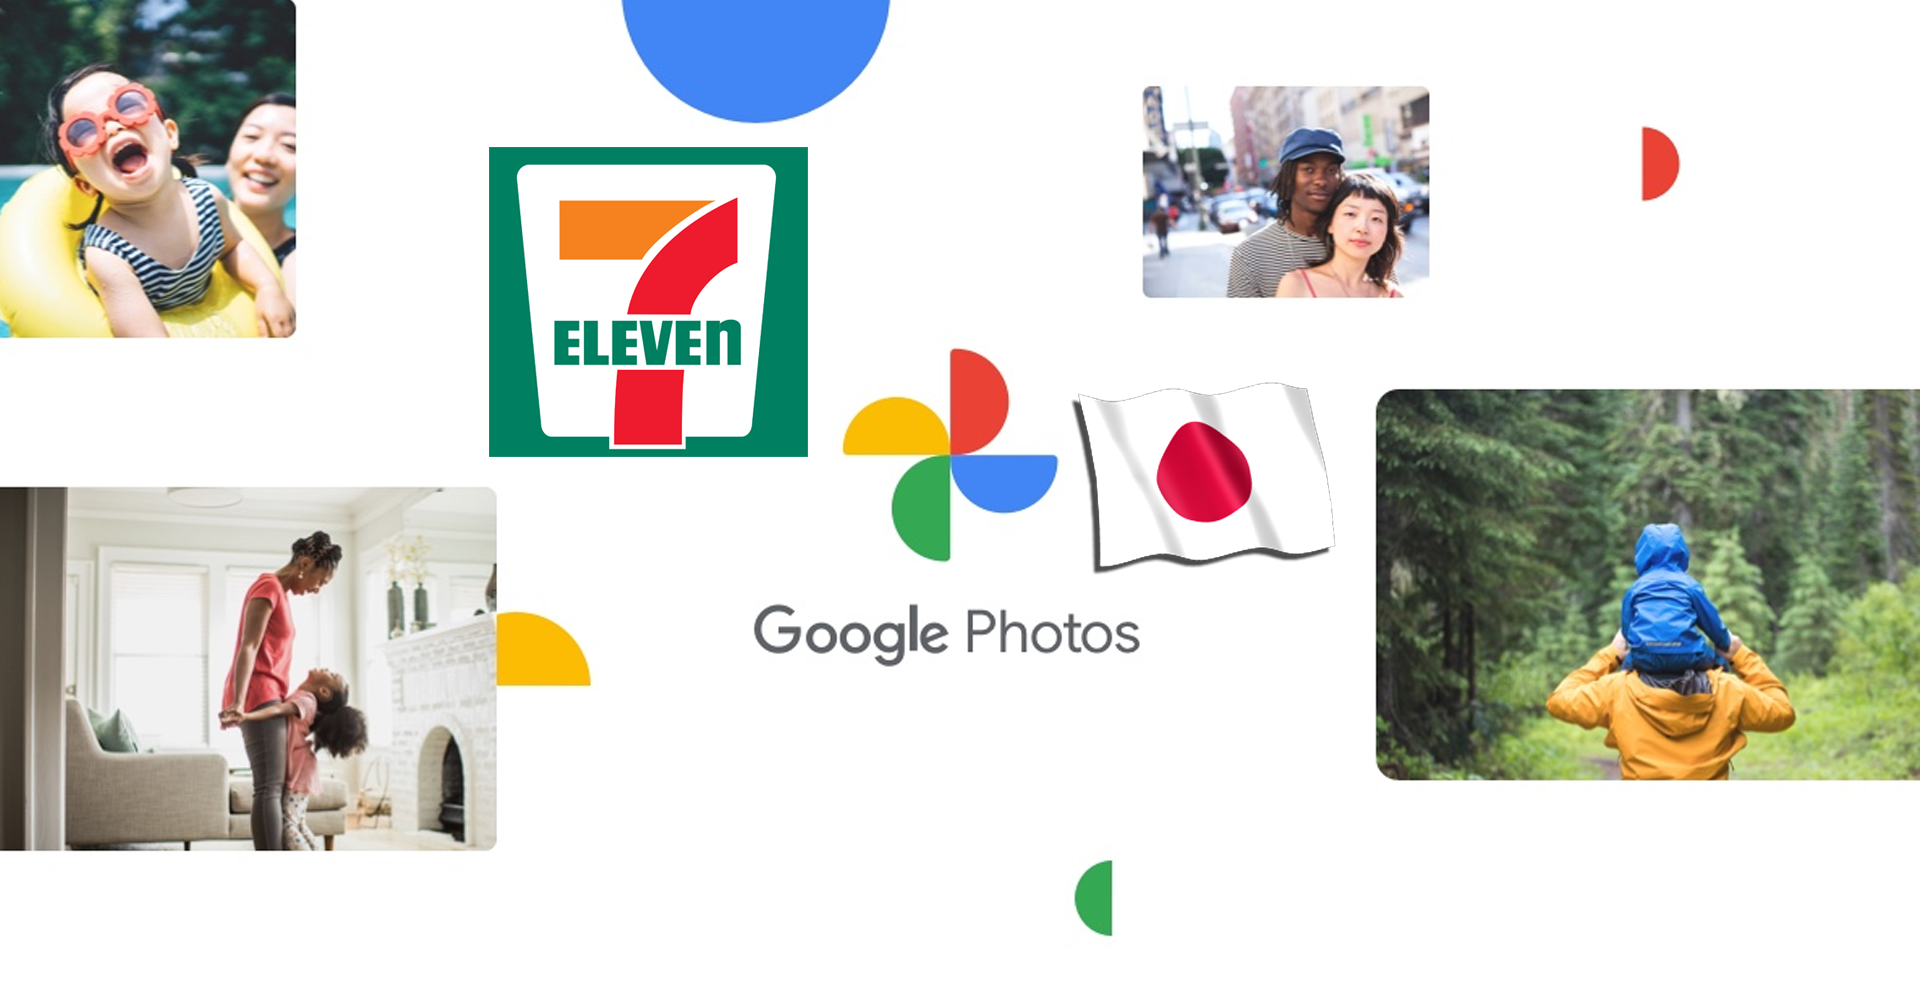 Print ภาพเมื่อไหร่ก็แวะมา! Google Photos เปิดให้บริการพิมพ์ภาพทาง 7-Eleven ทุกสาขาในญี่ปุ่น